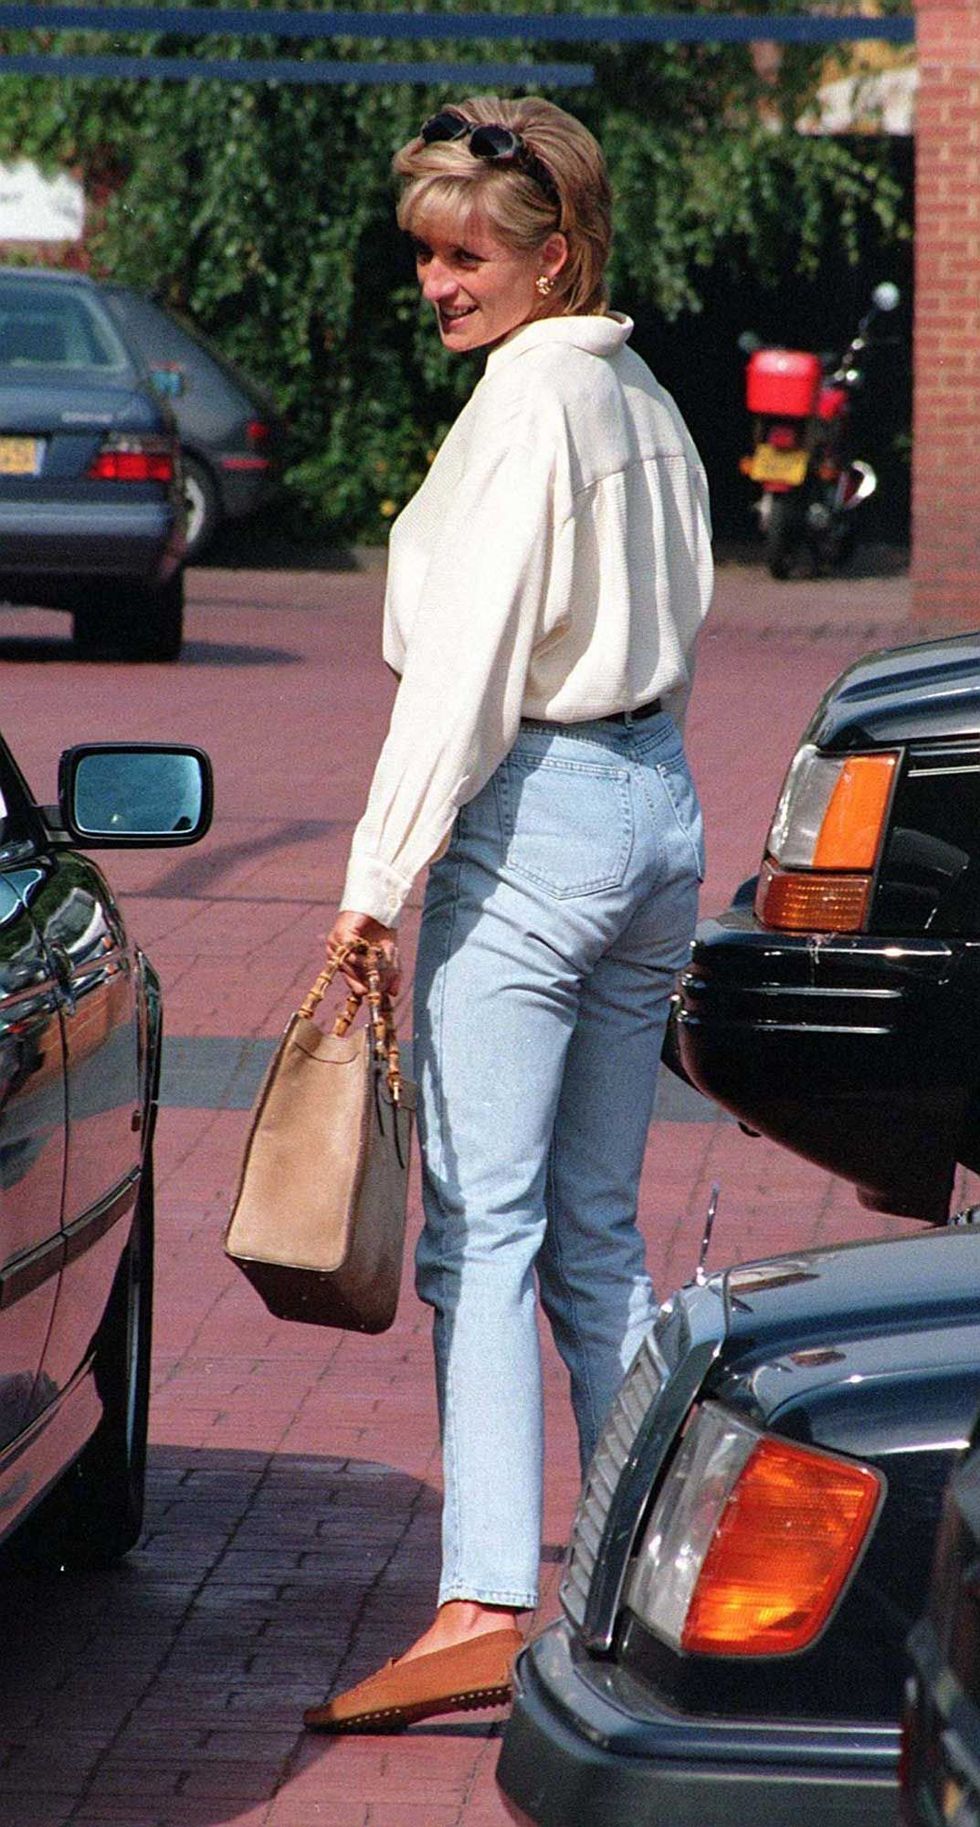 Gucci Diana Mini Leather Tote Bag in White - Gucci